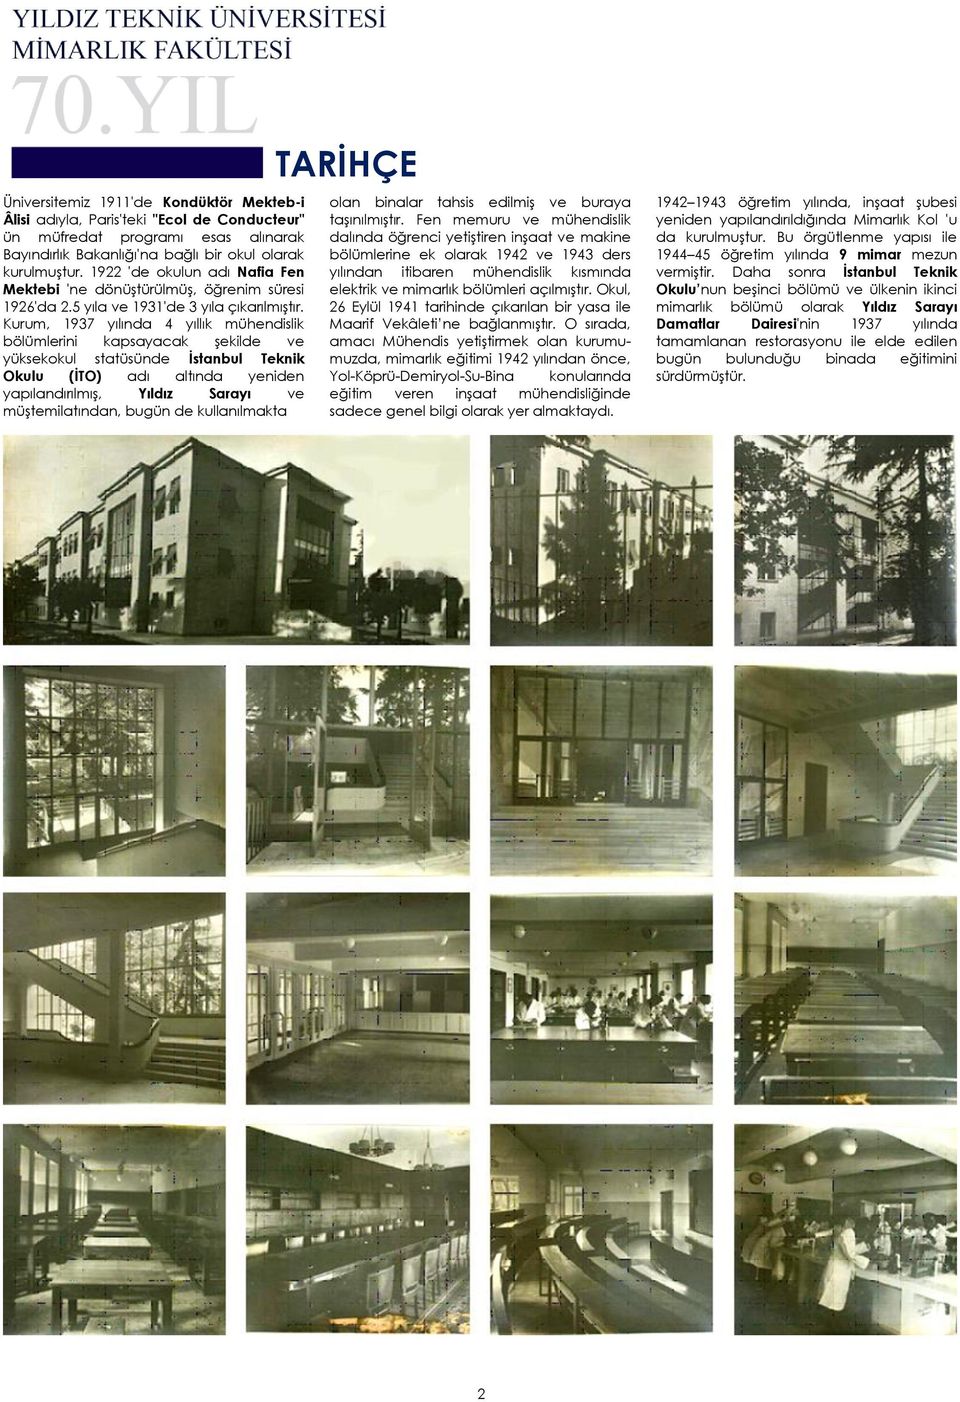 Kurum, 1937 yılında 4 yıllık mühendislik bölümlerini kapsayacak şekilde ve yüksekokul statüsünde İstanbul Teknik Okulu (İTO) adı altında yeniden yapılandırılmış, Yıldız Sarayı ve müştemilatından,